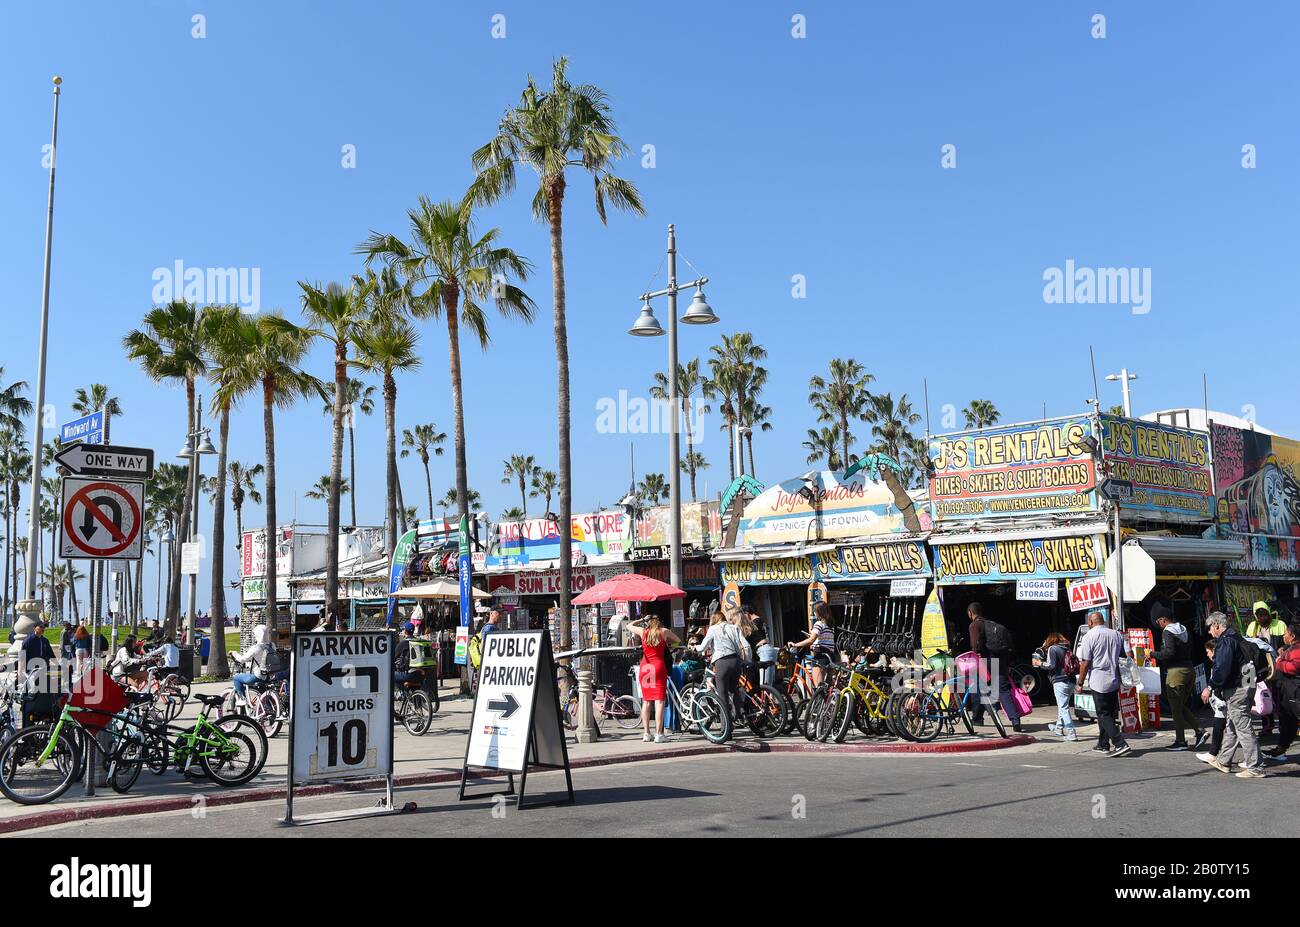 Venise, CALIFORNIE - 17 FÉVRIER 2020: J’s Rentals and shops at Windward Avenue et The Boardwalk à la destination populaire de la Californie du Sud. Banque D'Images